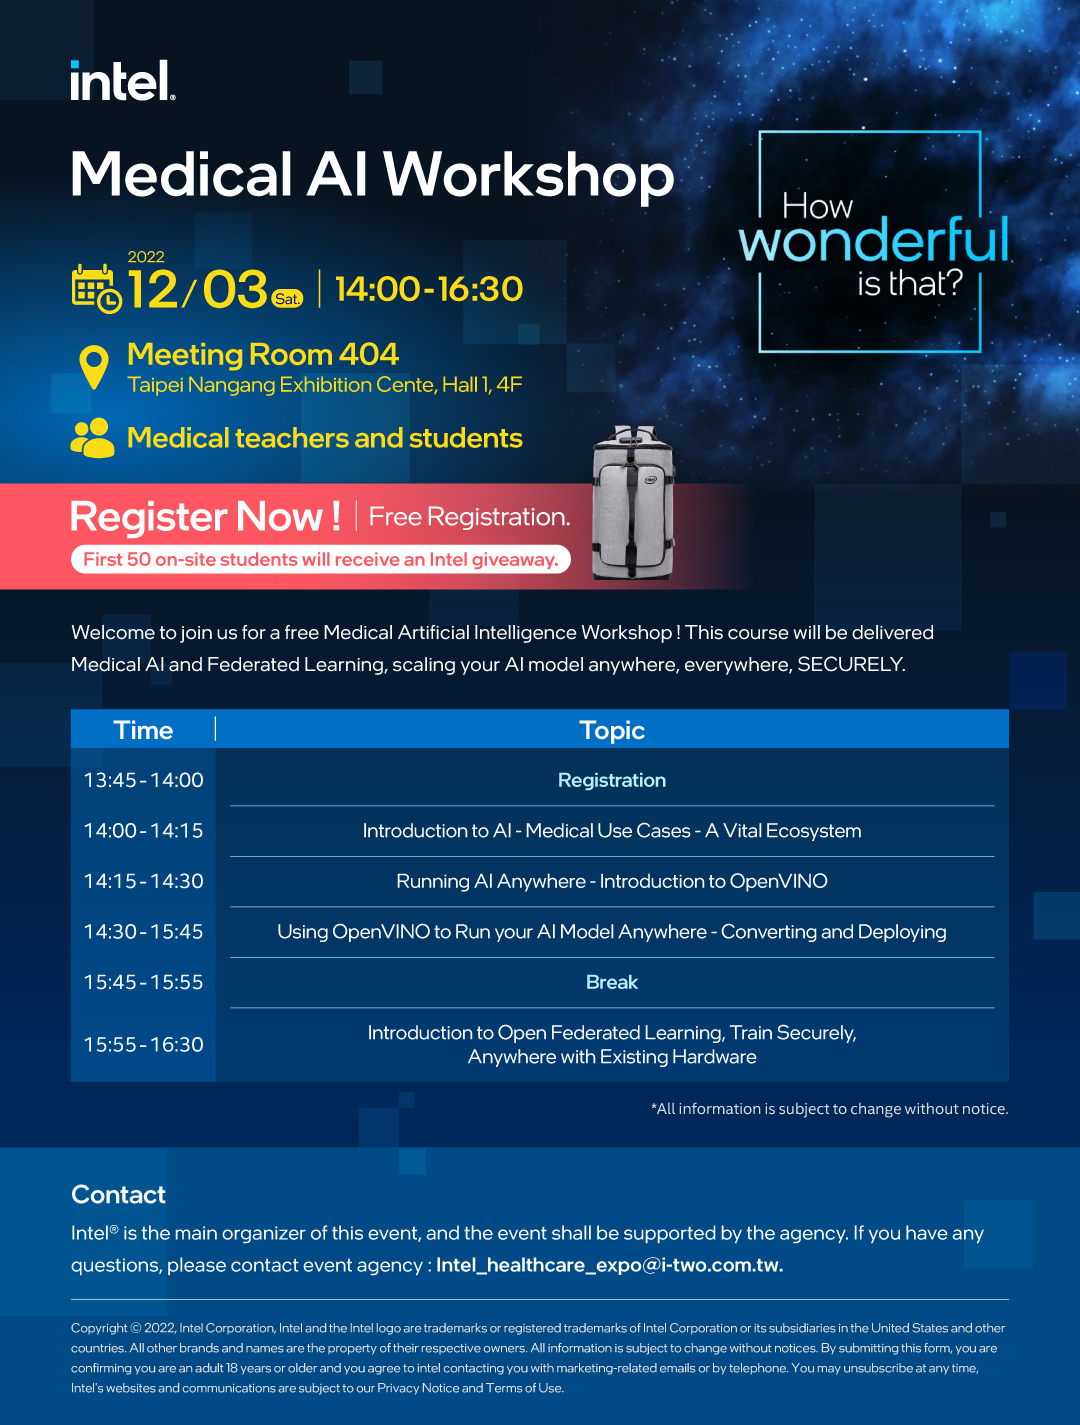 Intel Medical AI Workshop_eDM(W1080px)_V4.jpg